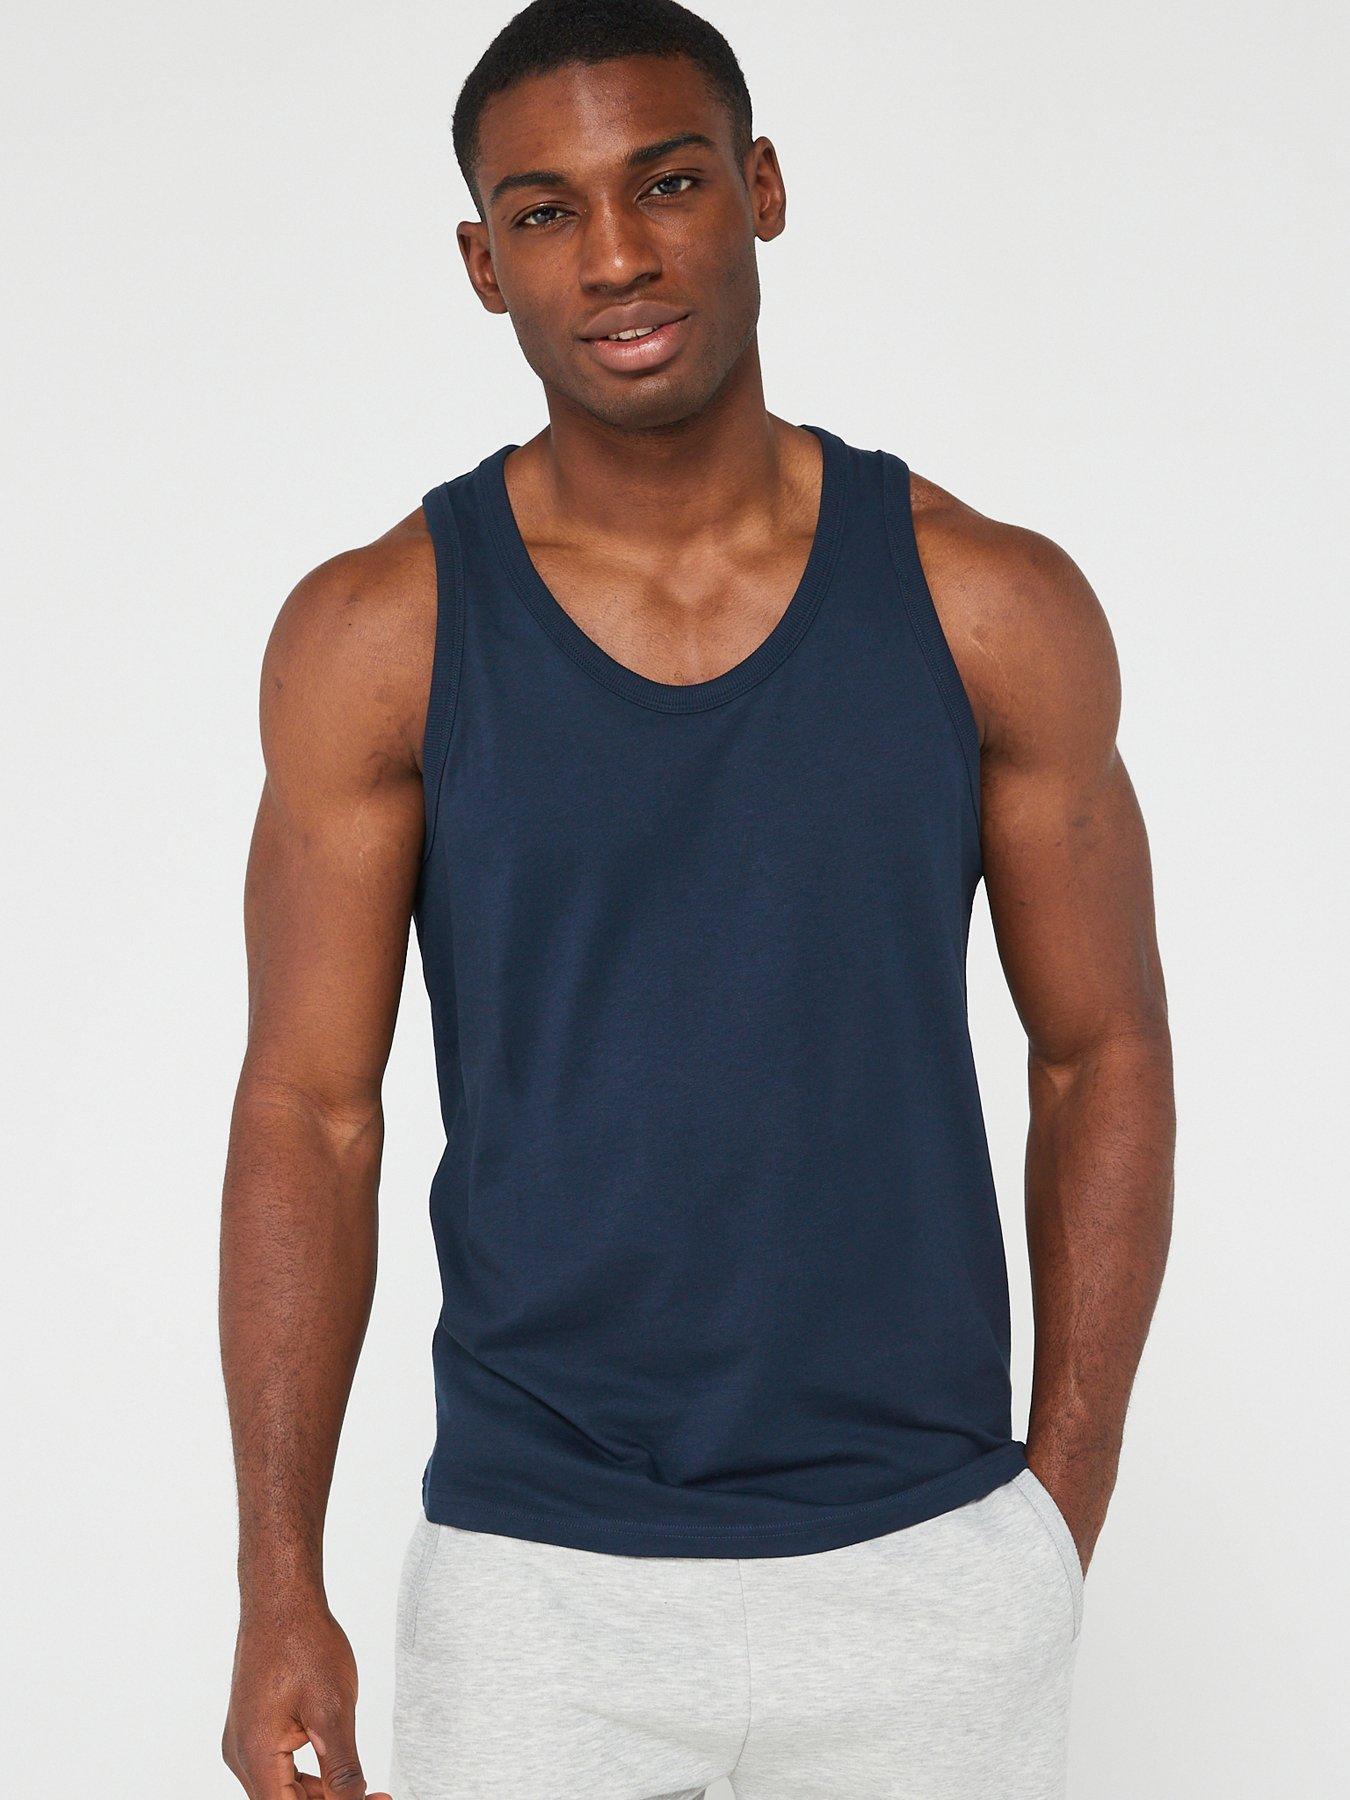 Men's Sleeveless T-Shirts & Polos, Sleeveless Tops